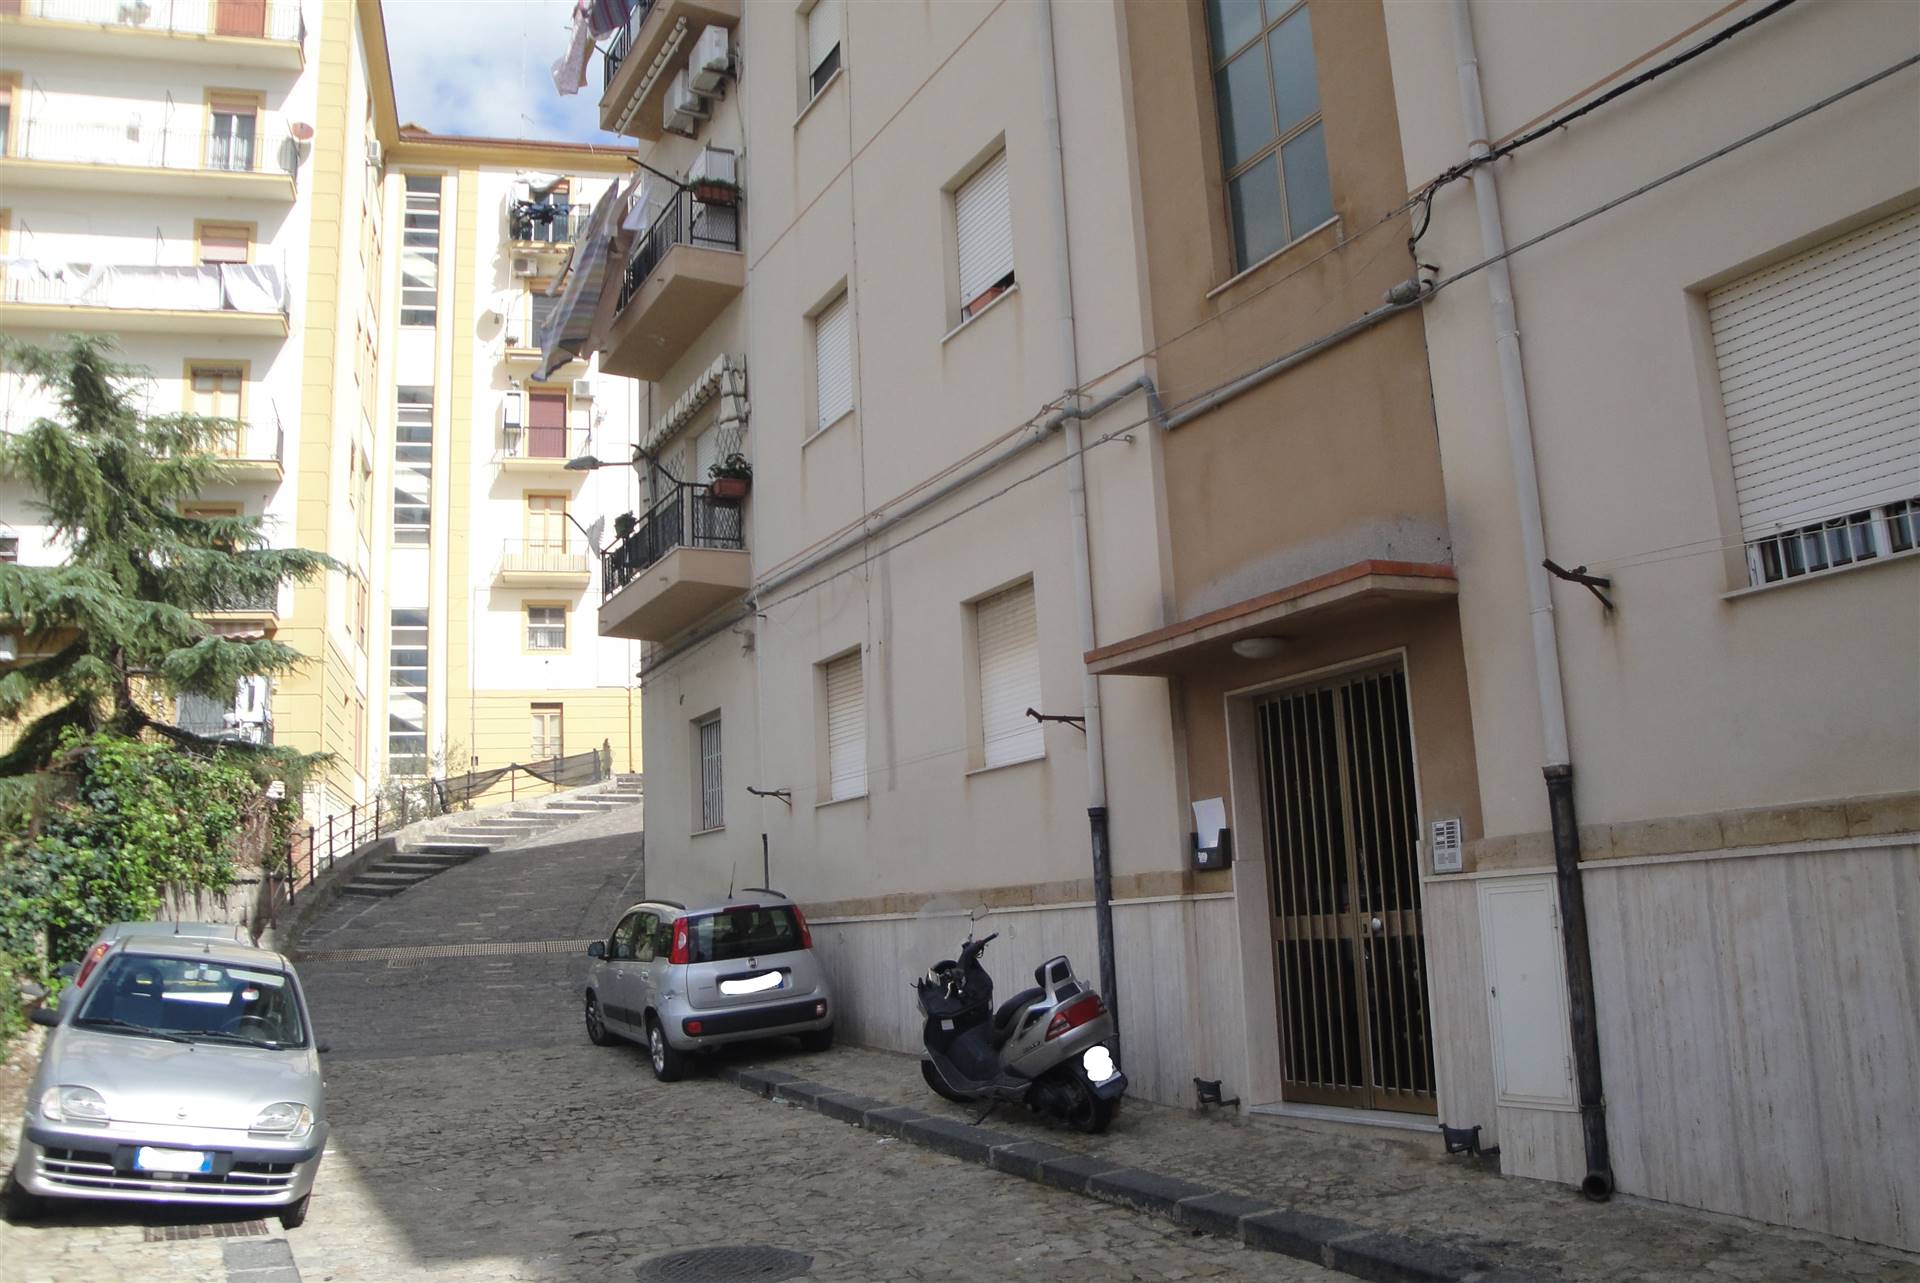 A Caltanissetta, in via Gobetti 1, Quantum Real Estate propone in vendita appartamento di mq 129 posto al terzo piano di una elegante palazzina 